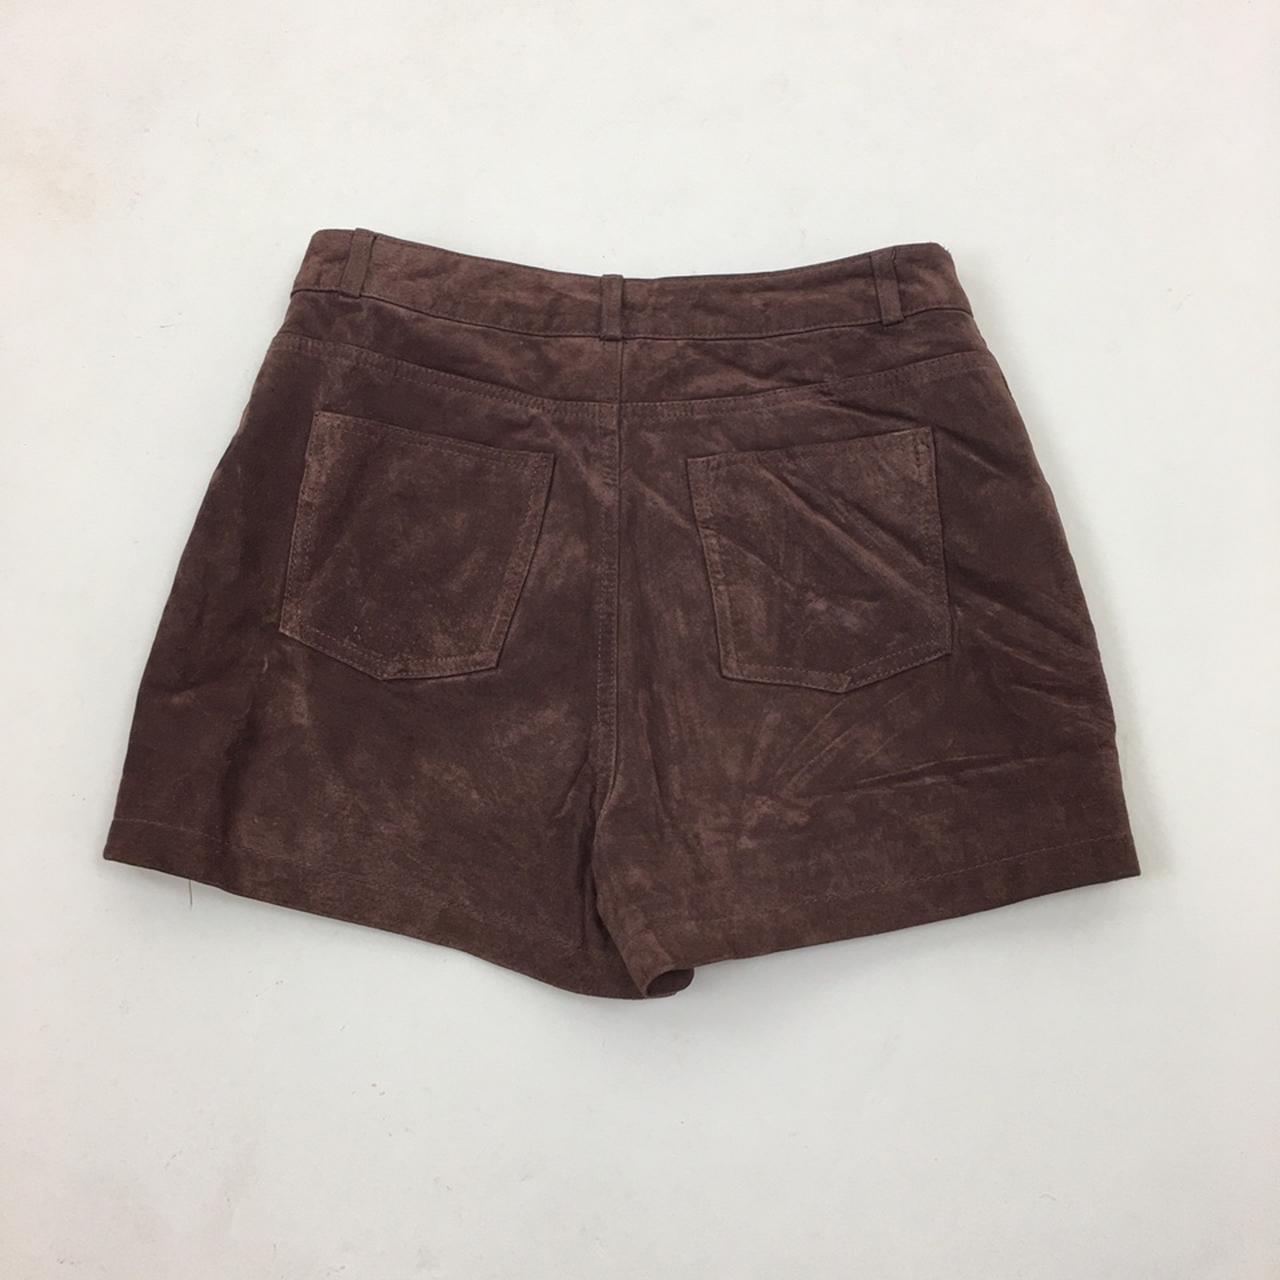 Vintage 1990s Suede Leather High waist Shorts UK... - Depop